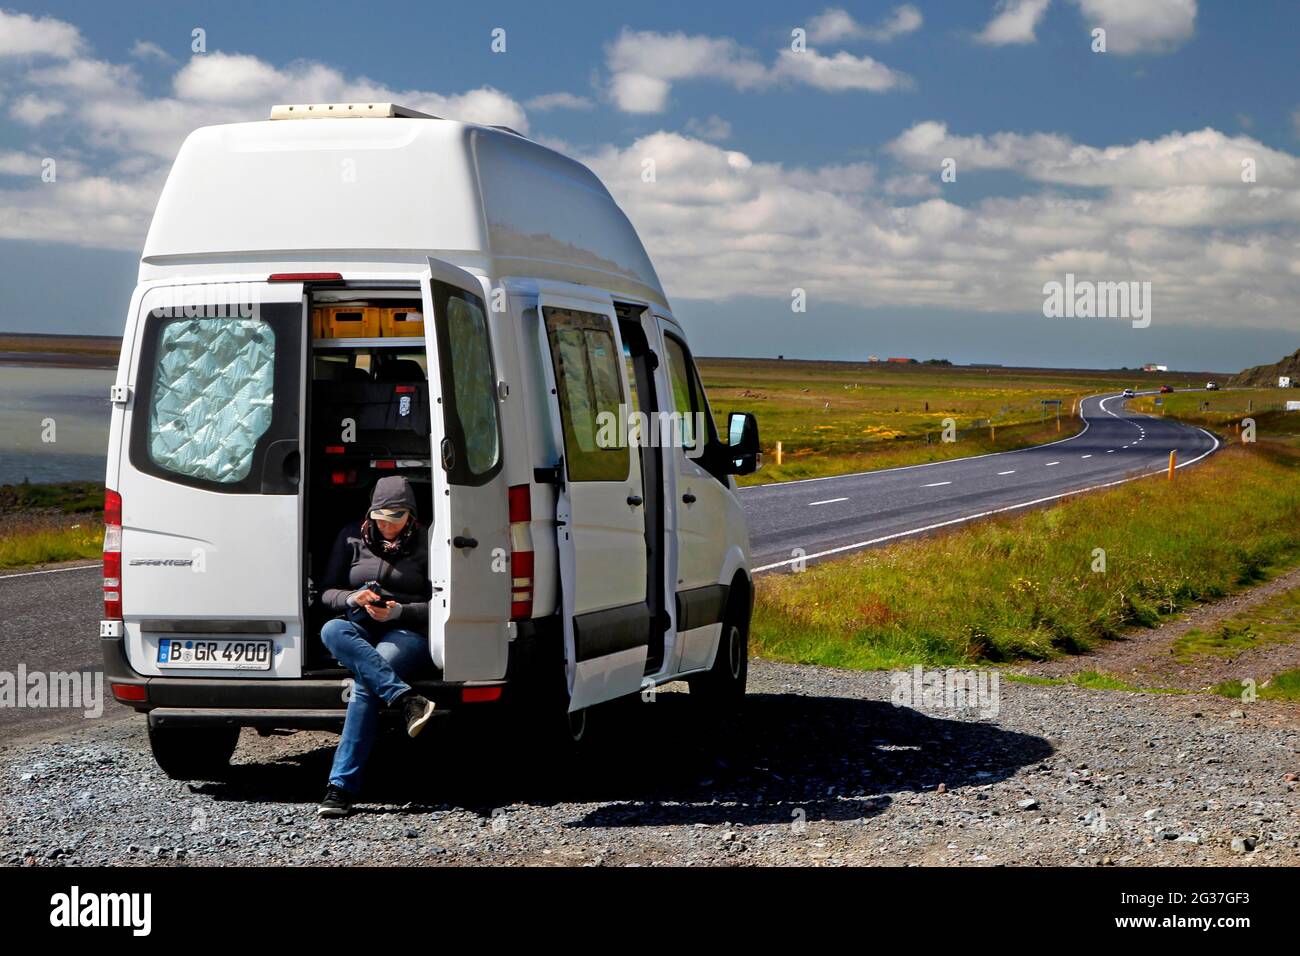 Strada, tangenziale, N 1, Mercedes Sprinter camper, camper, Aprire la porta posteriore, donna seduta nella parte posteriore, Brekkukot, Islanda del Sud, Islanda Foto Stock